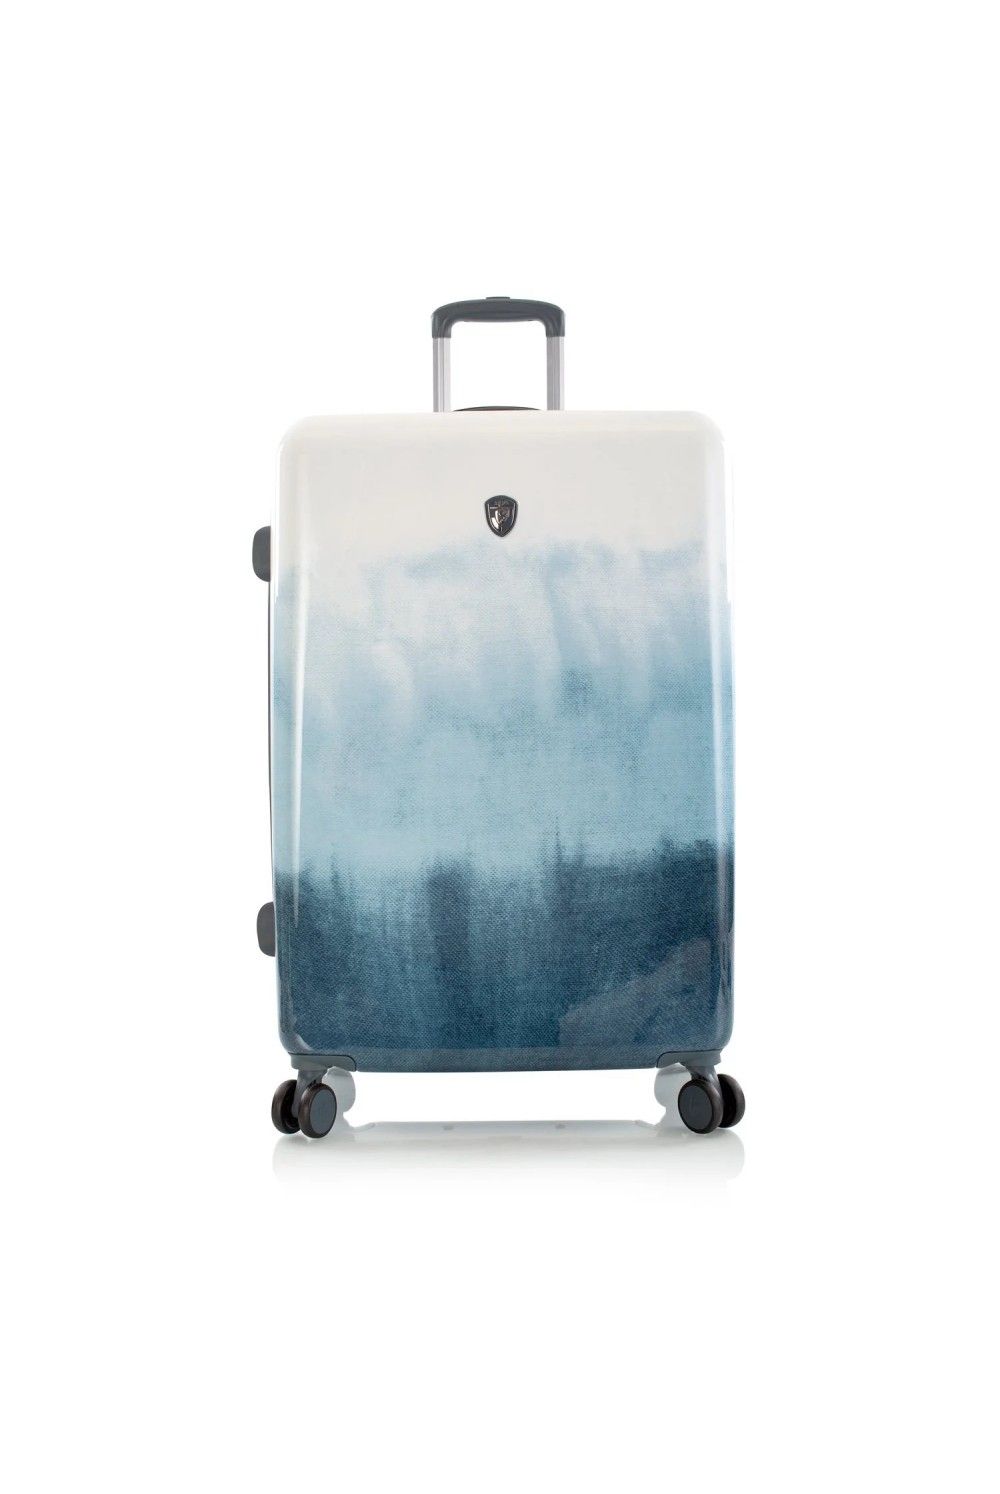 Koffer Heys Blue Fashion 4 Rad Large 76cm erweiterbar